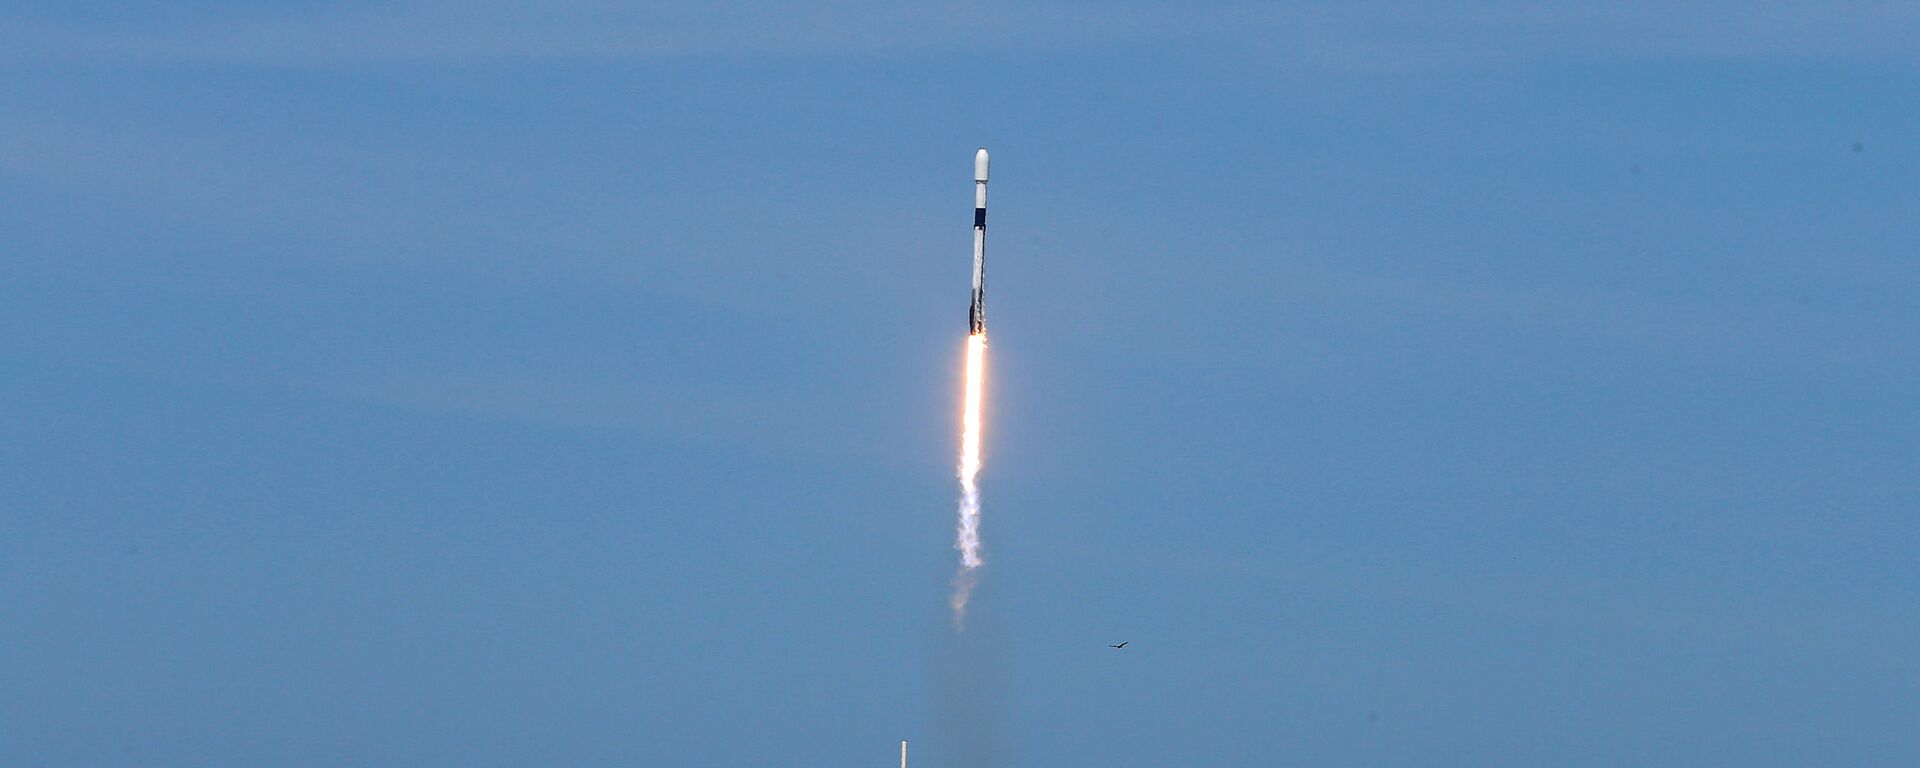 Starlink uydu ağının 6'ncı halkası 60 uydu, SpaceX üretimi Falcon 9 roketiyle ABD'nin Florida eyaletindeki Cape Canaveral Üssü'nden fırlatıldı. - Sputnik Türkiye, 1920, 19.06.2022